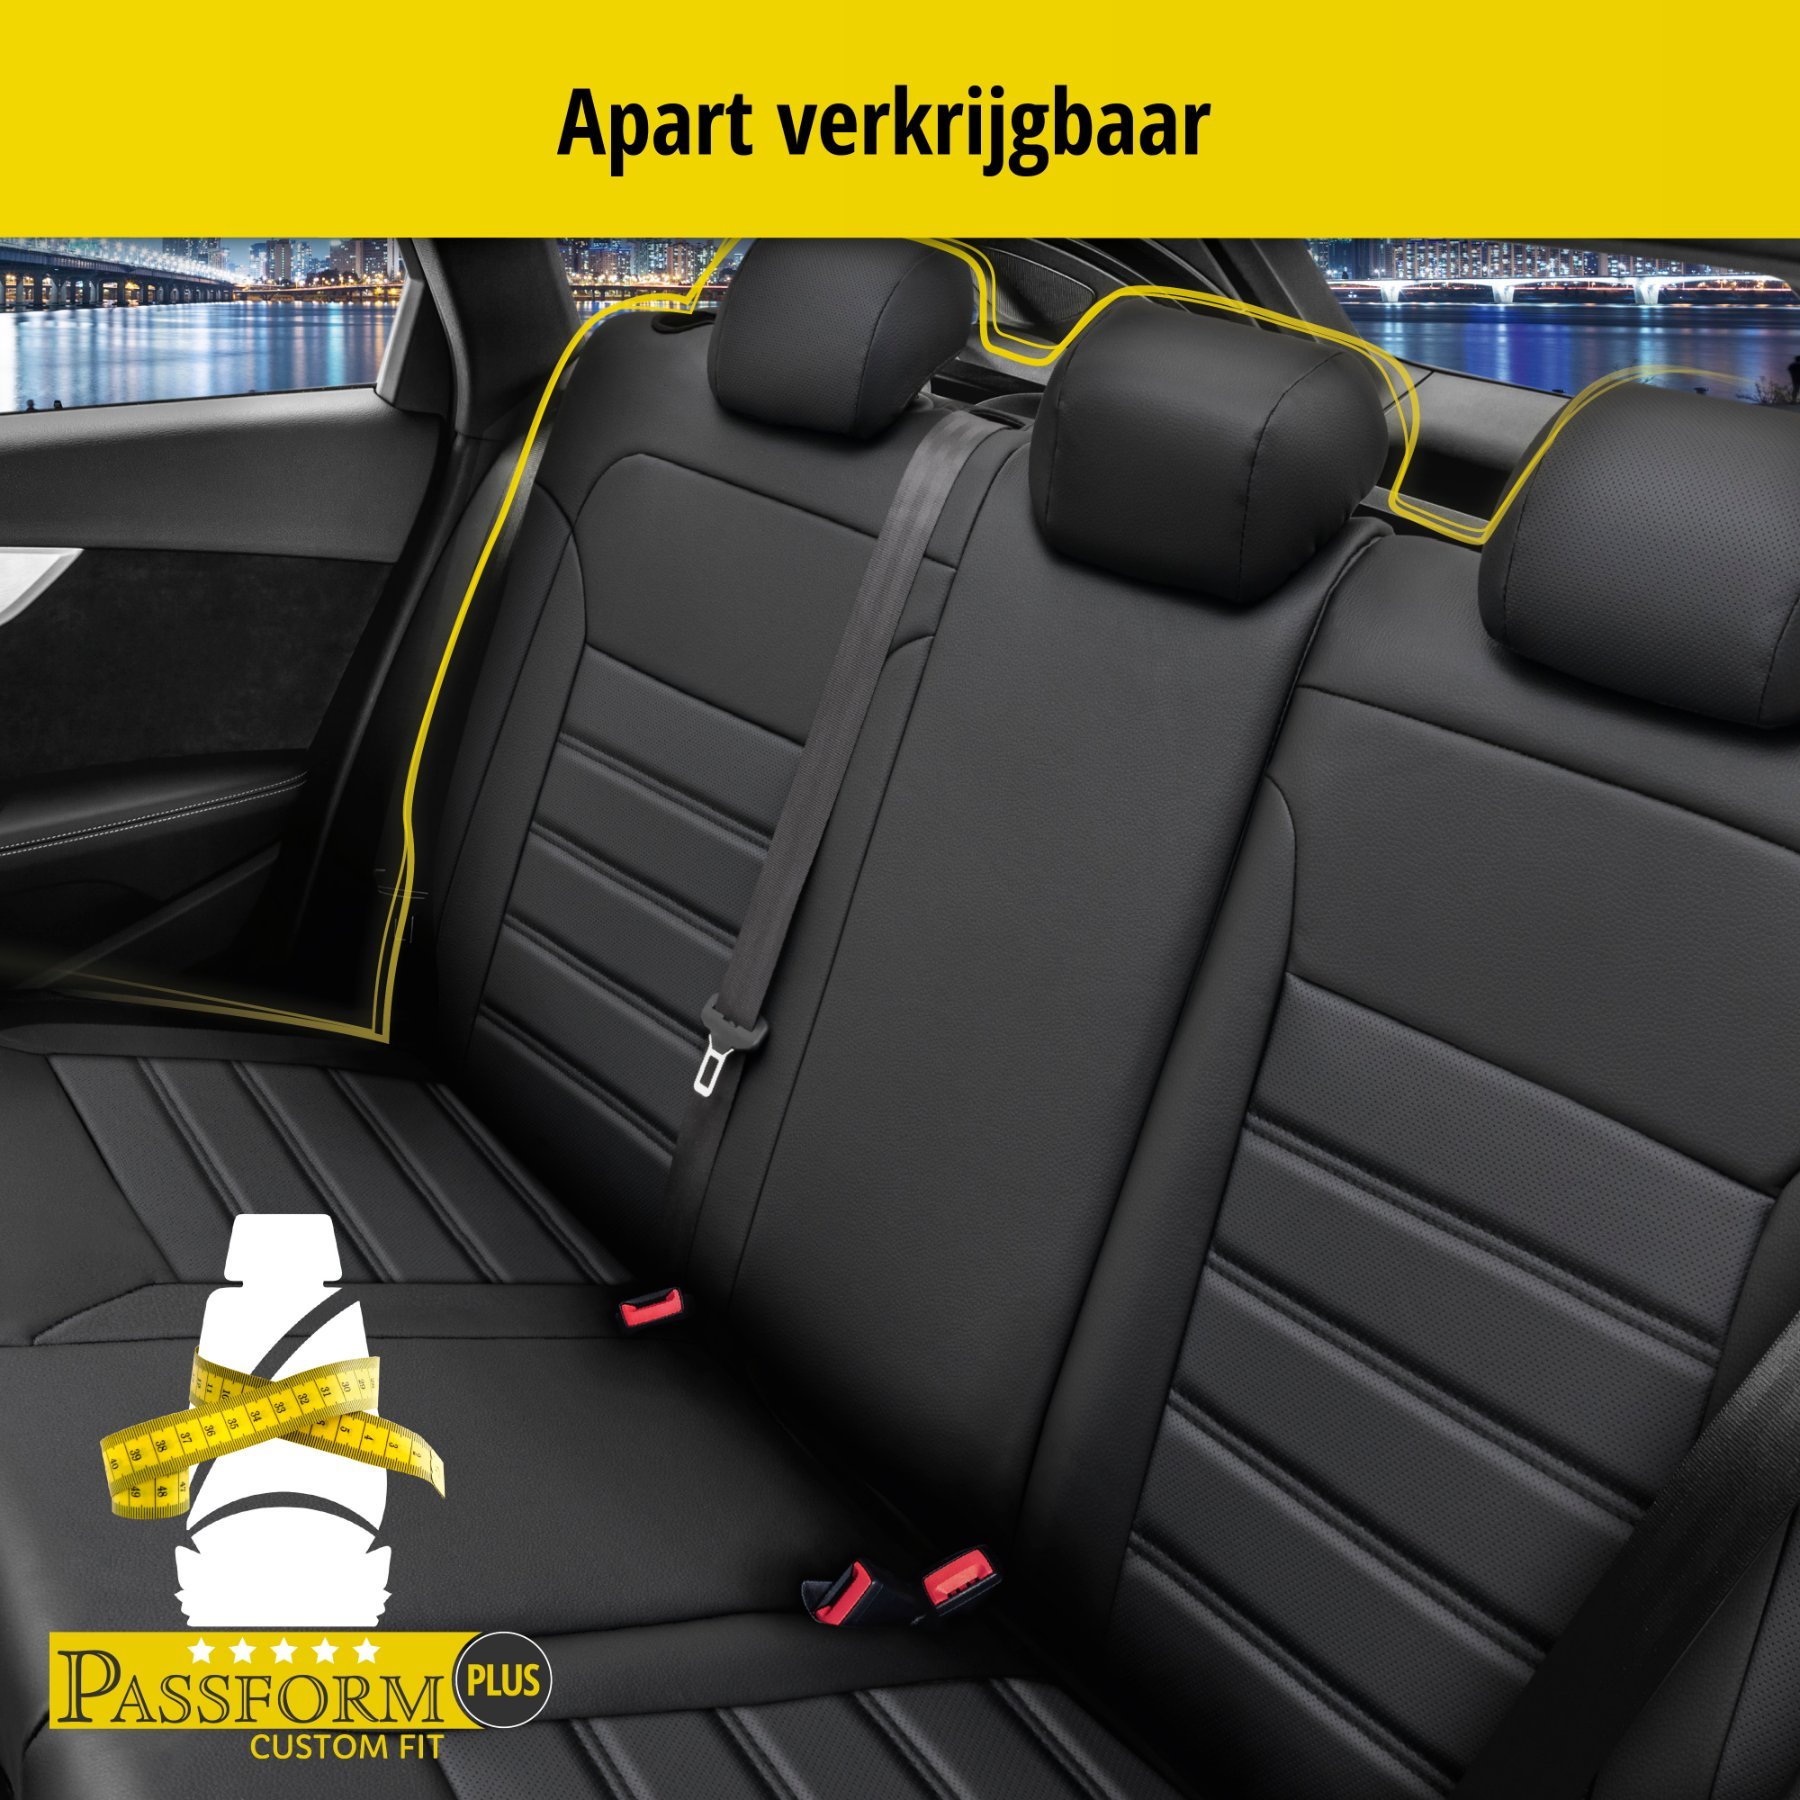 Auto stoelbekleding Robusto geschikt voor Skoda Rapid 07/2012 - 12/2019, 2 enkele zetelhoezen voor standard zetels